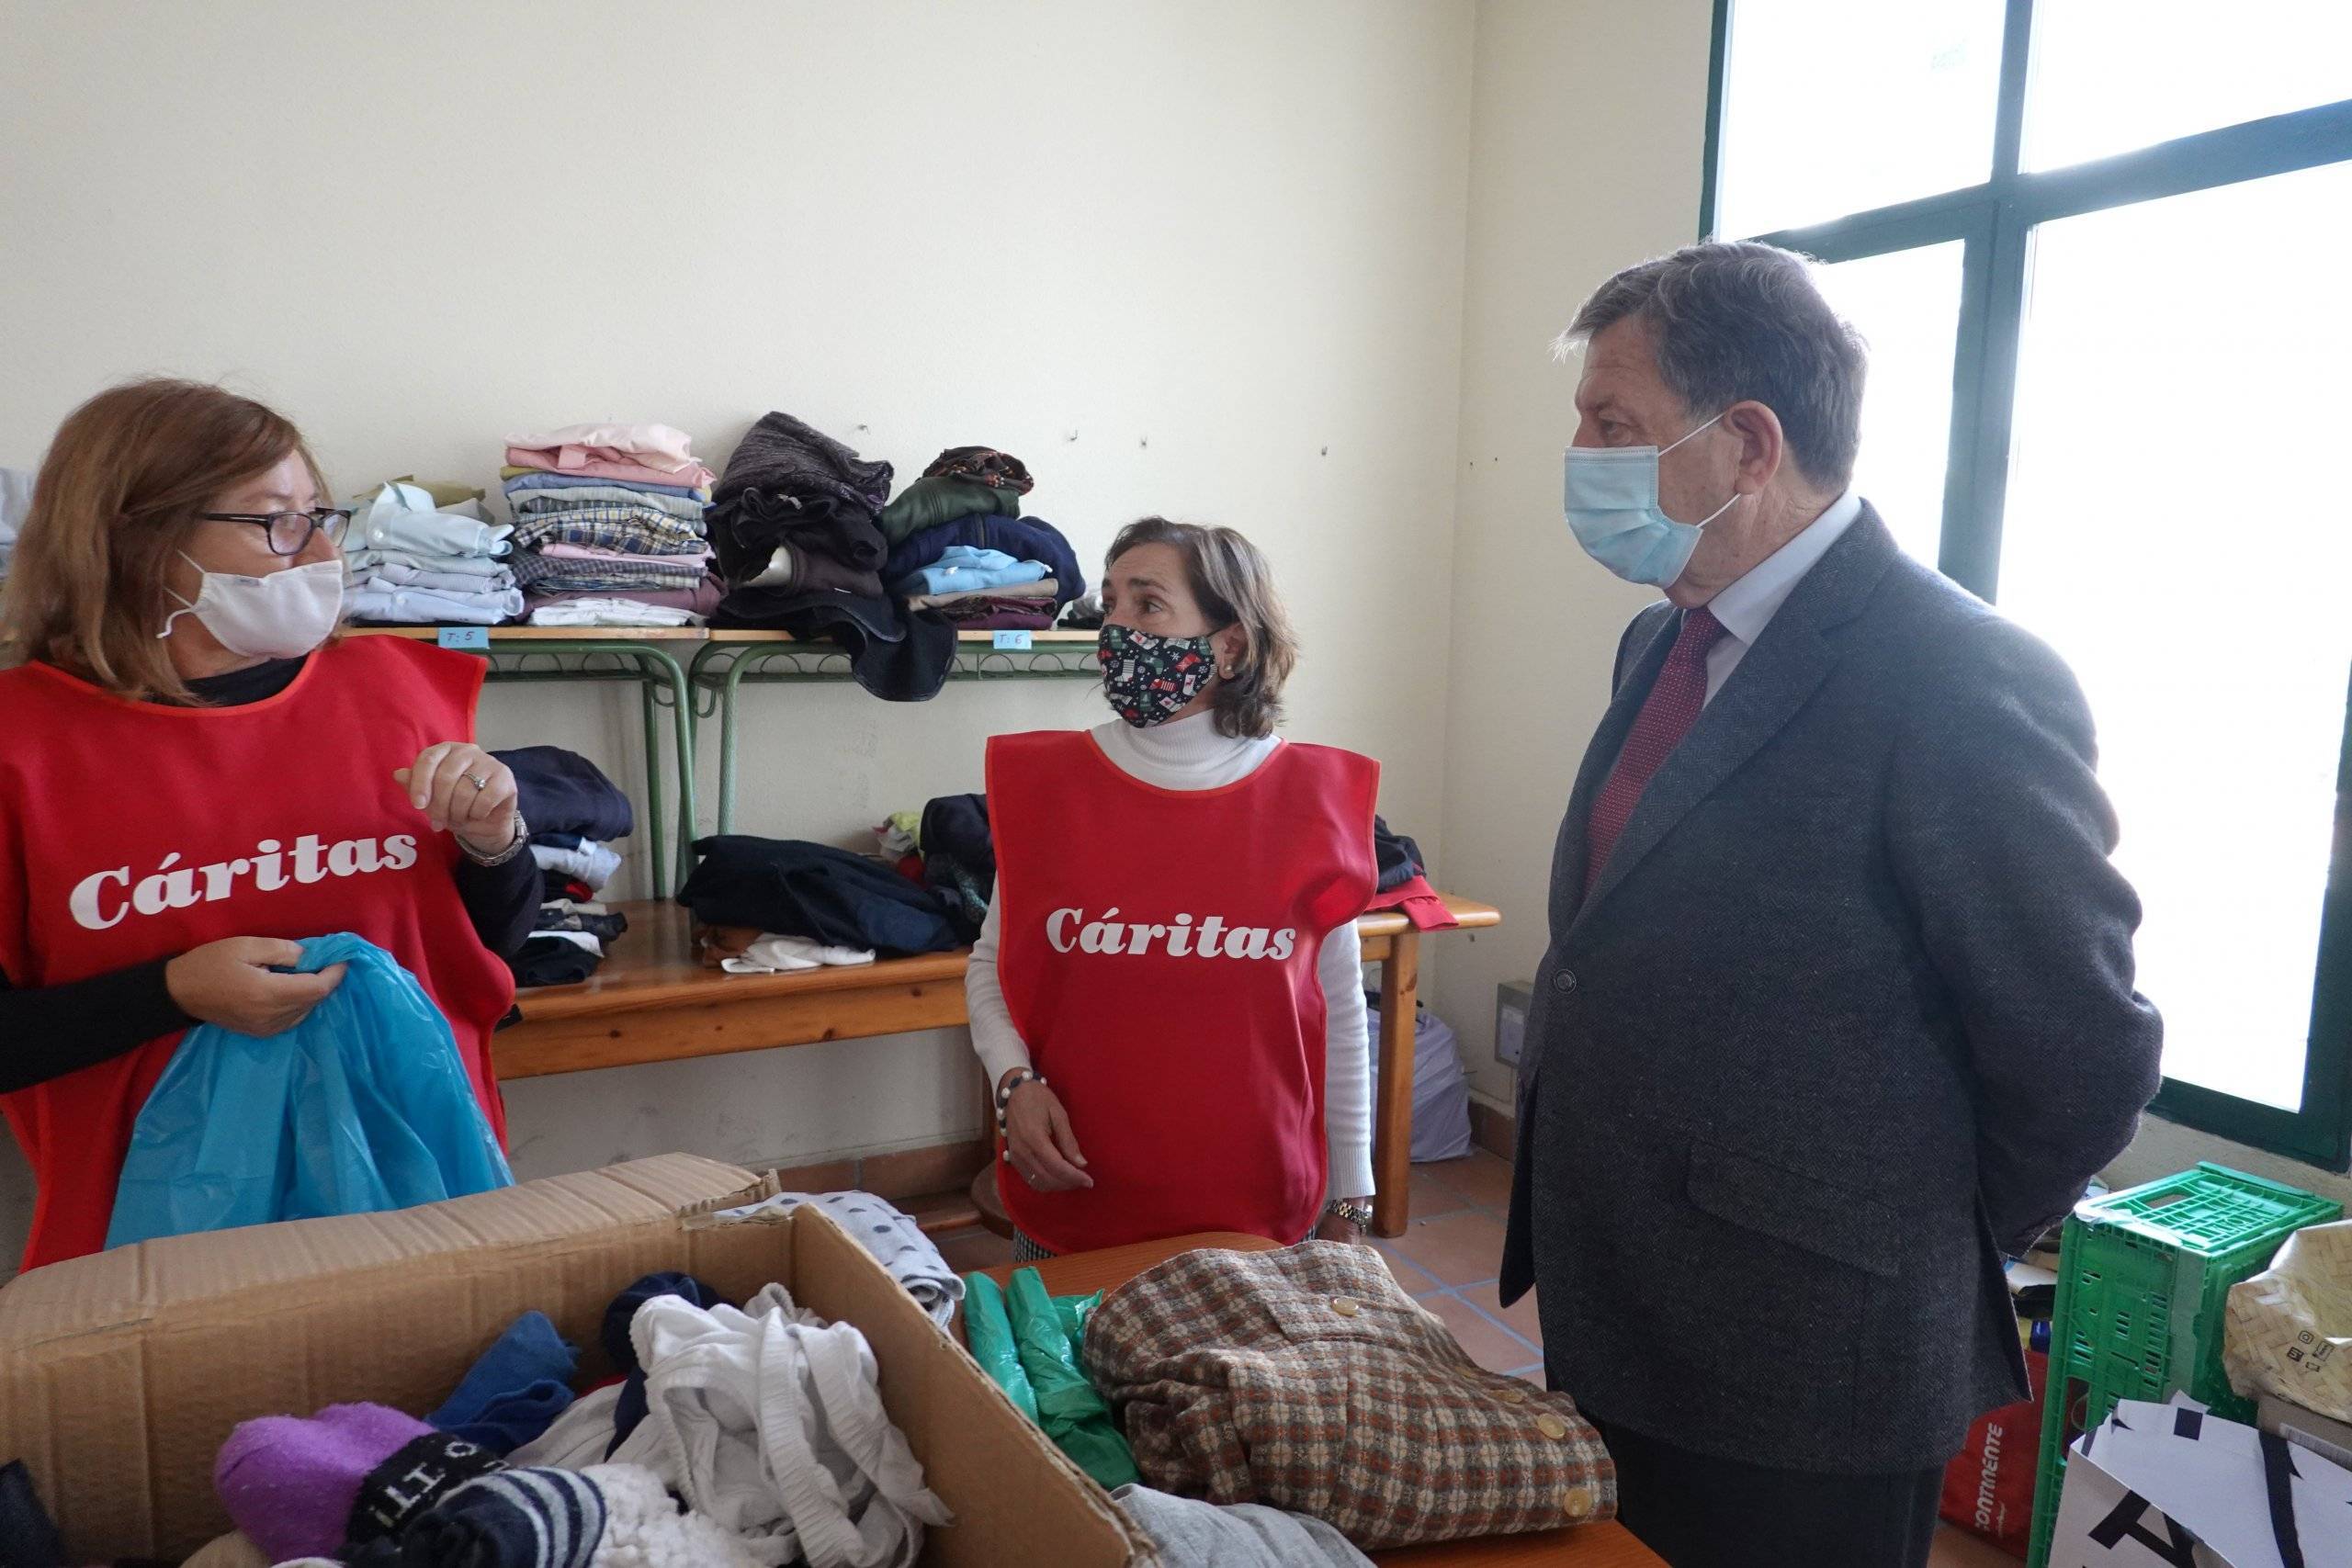 El alcalde, Luis Partida, visita las dependencias municipales donde se están recogiendo y clasificando los artículos donados a los ucranianos.